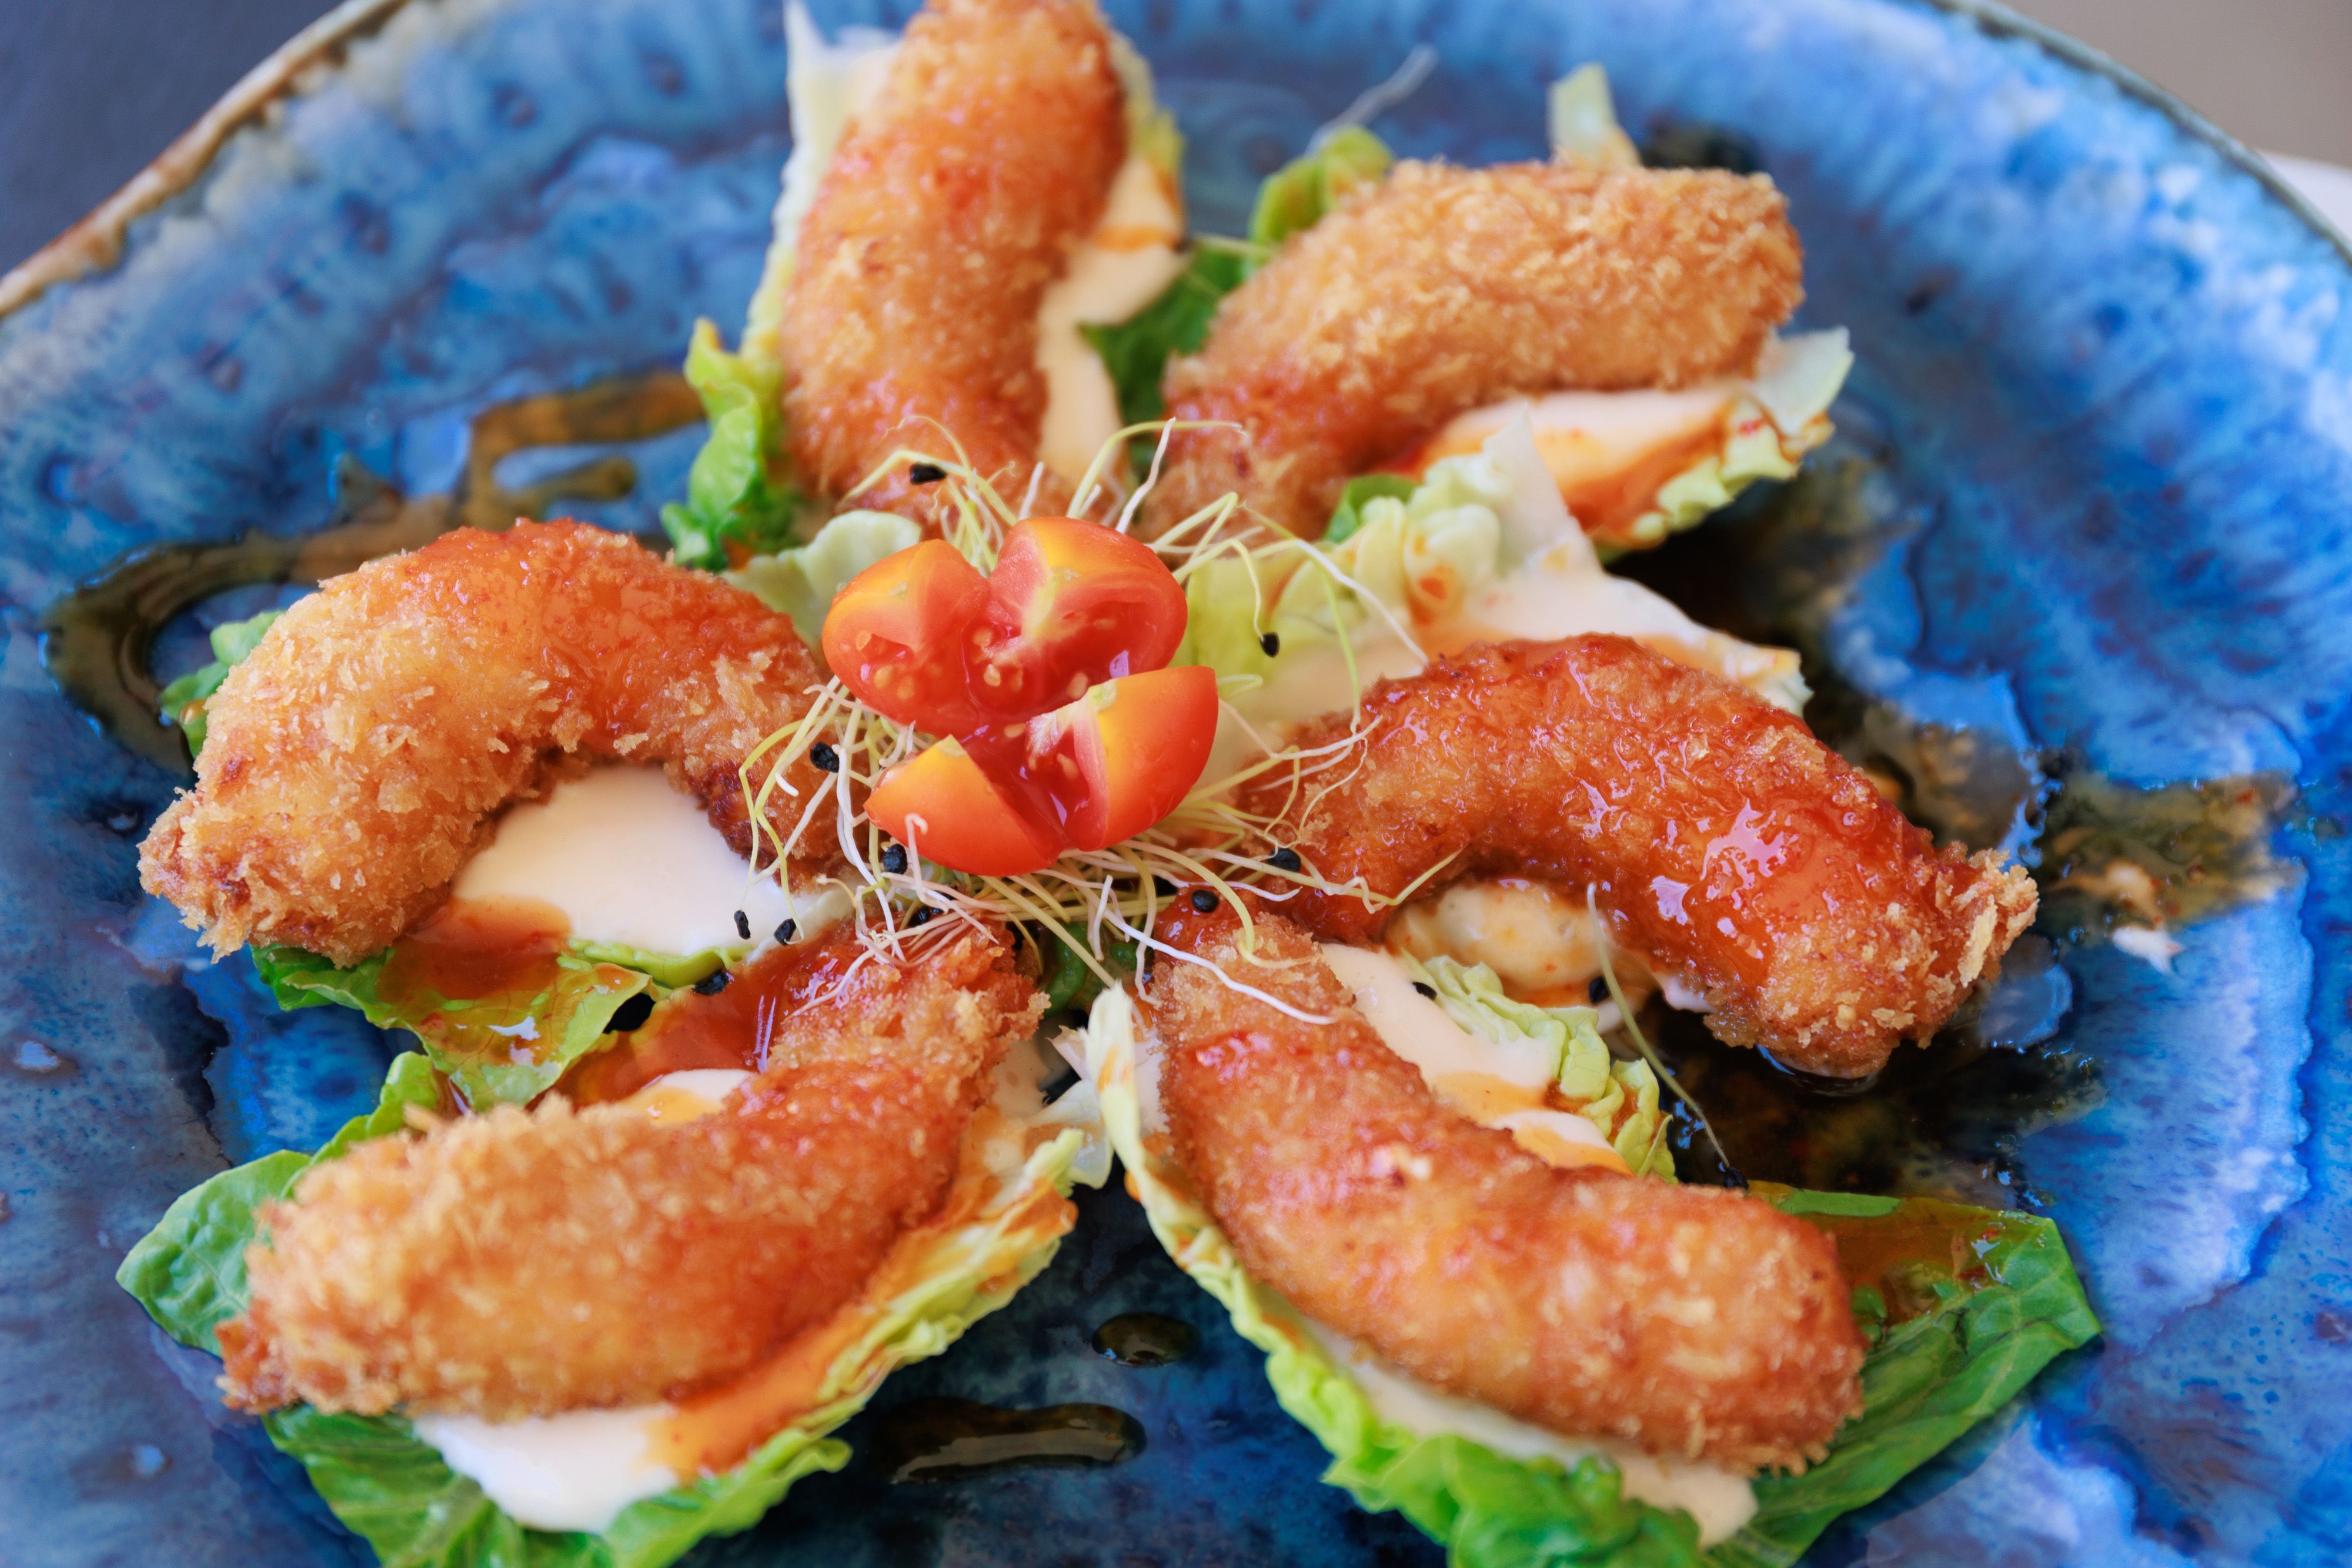 Langostinos en tempura de La Casona, restaurante ubicado en el entorno del puerto de Tarifa.  